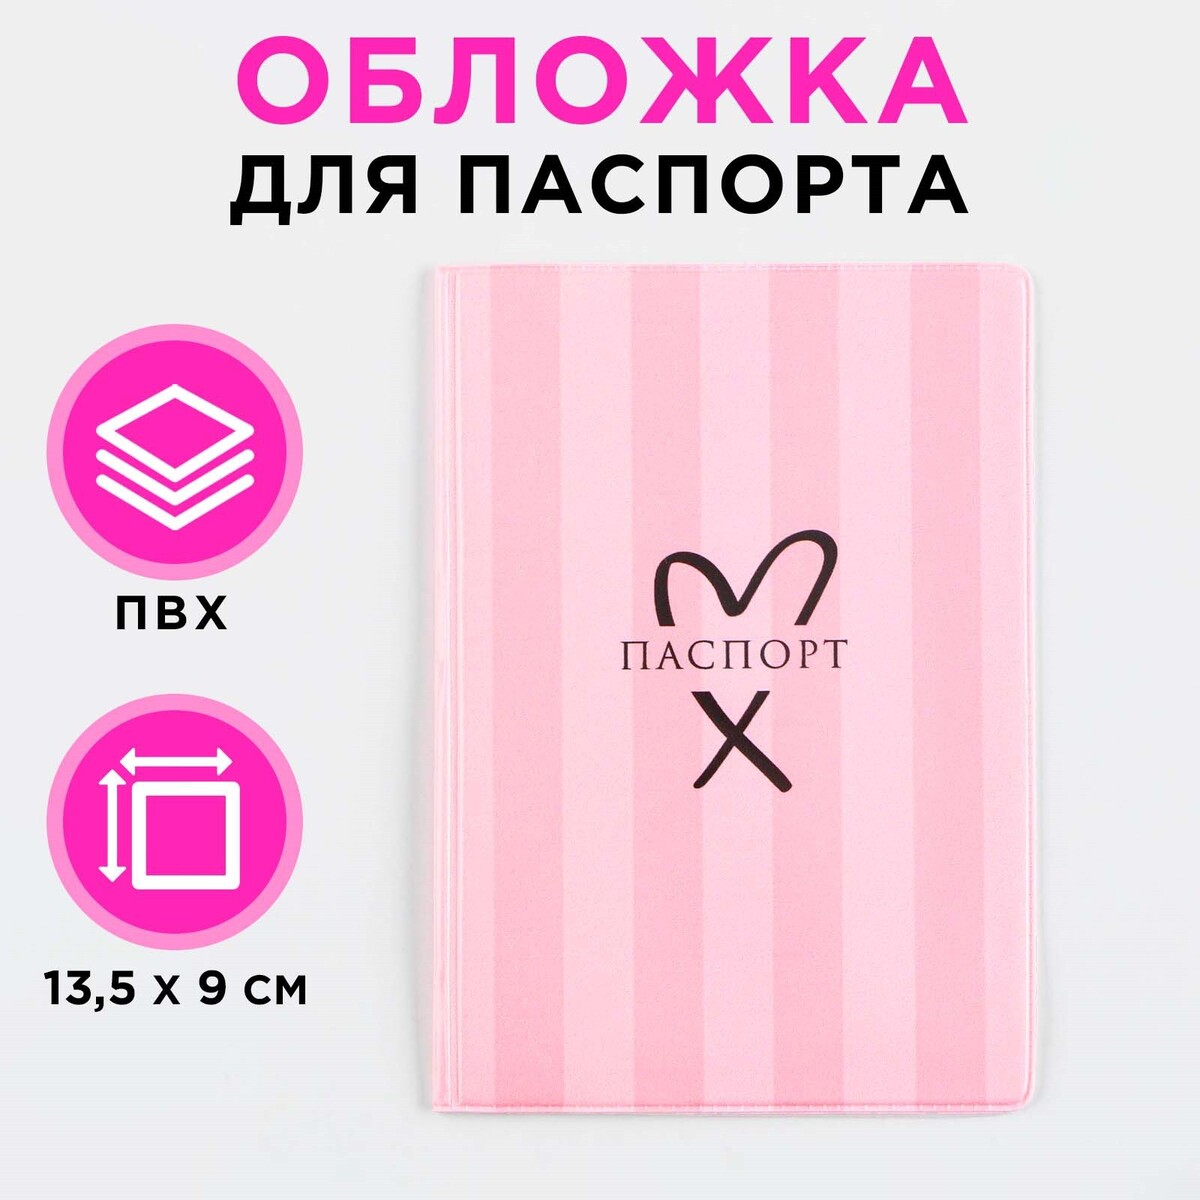 Обложка для паспорта, розовая полоска, пвх, полноцветная печать v plans женский планировщик новая я розовая нежность